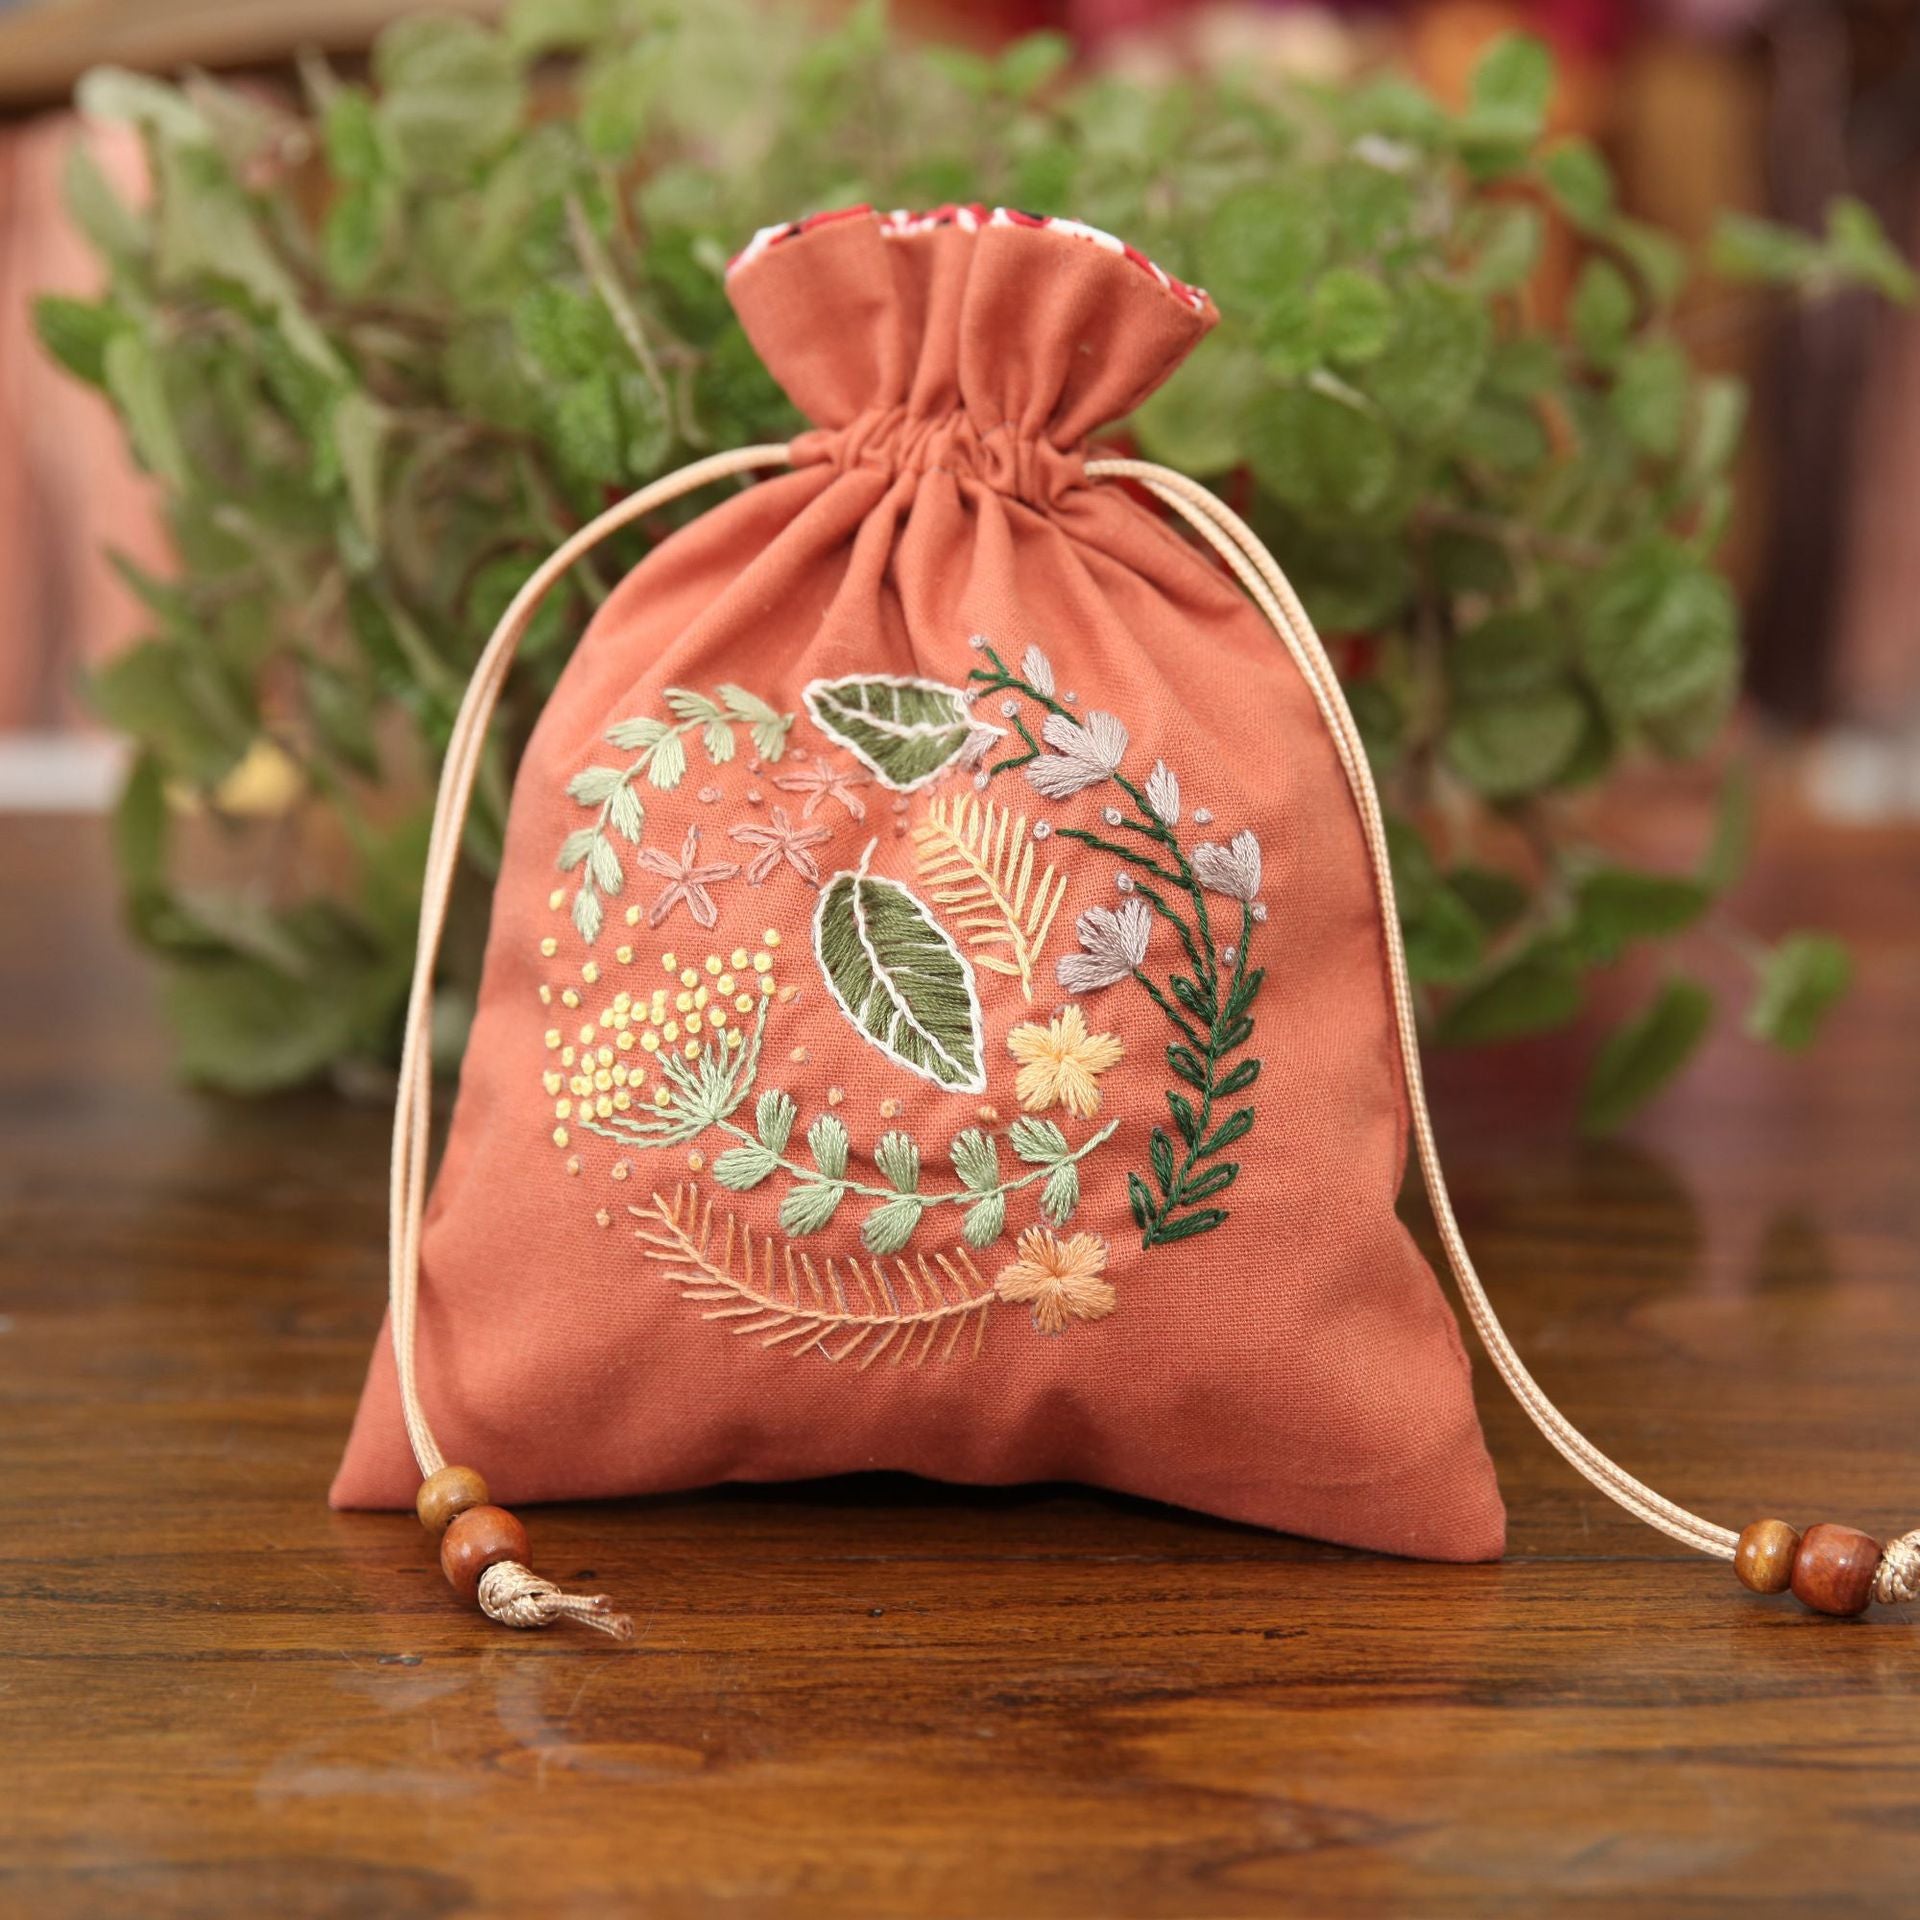 Sachet Bag Embroidery Art Kit - 1Pcs